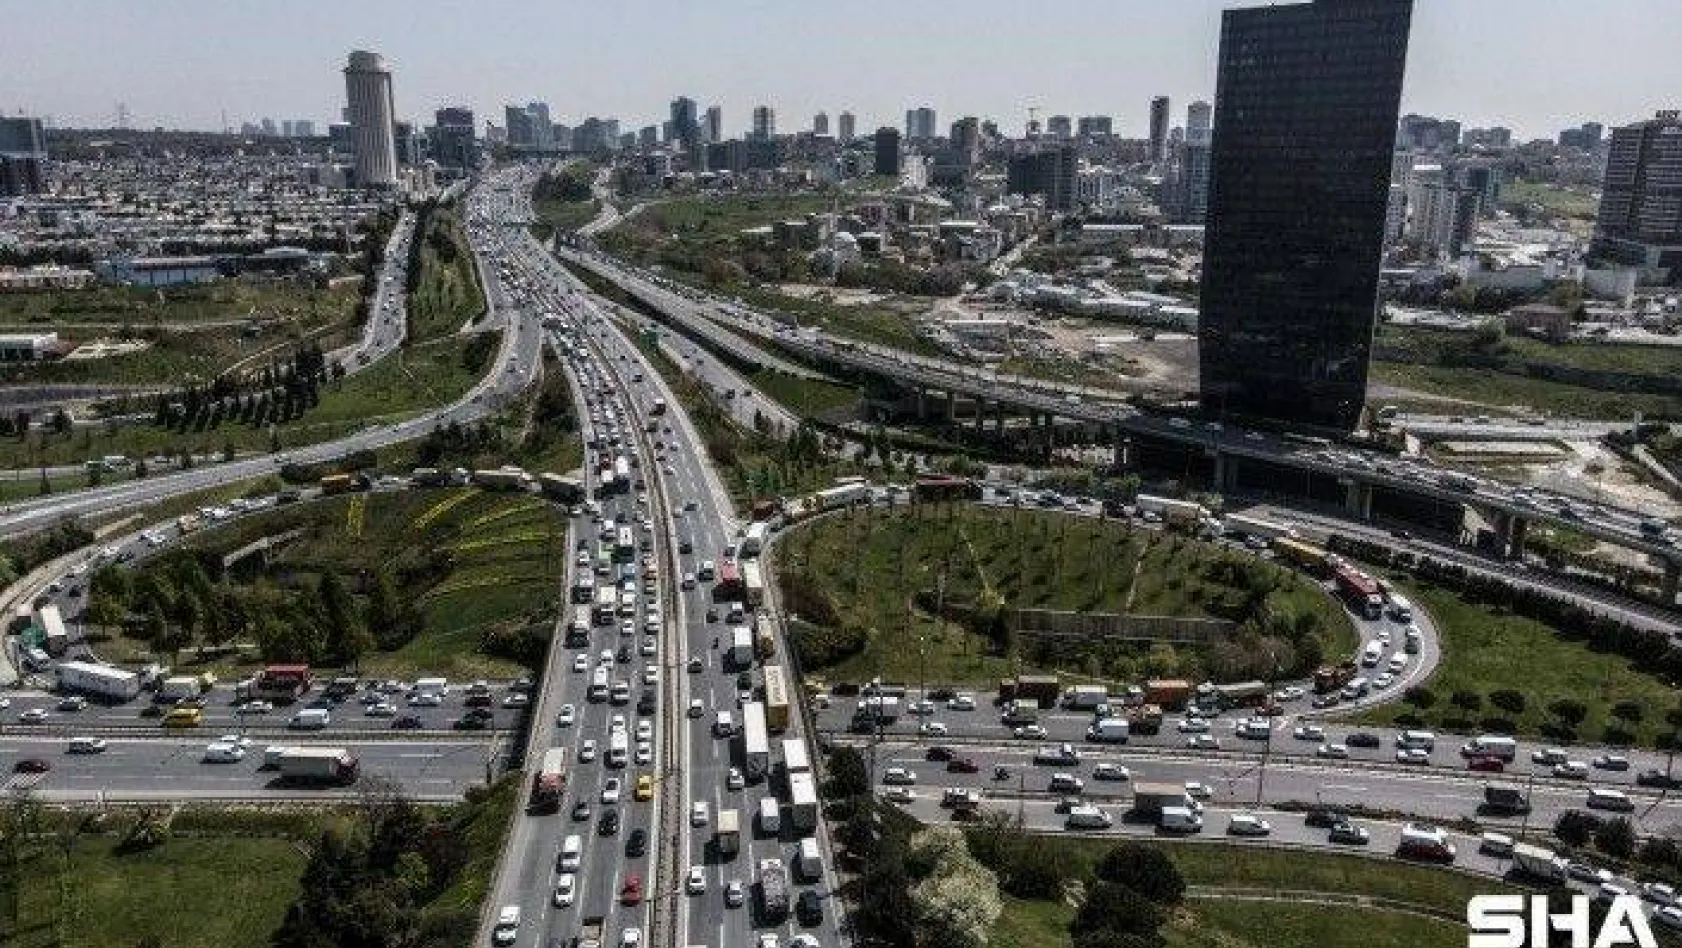 Tam kapanmaya saatler kala İstanbul trafiğinde yoğunluk